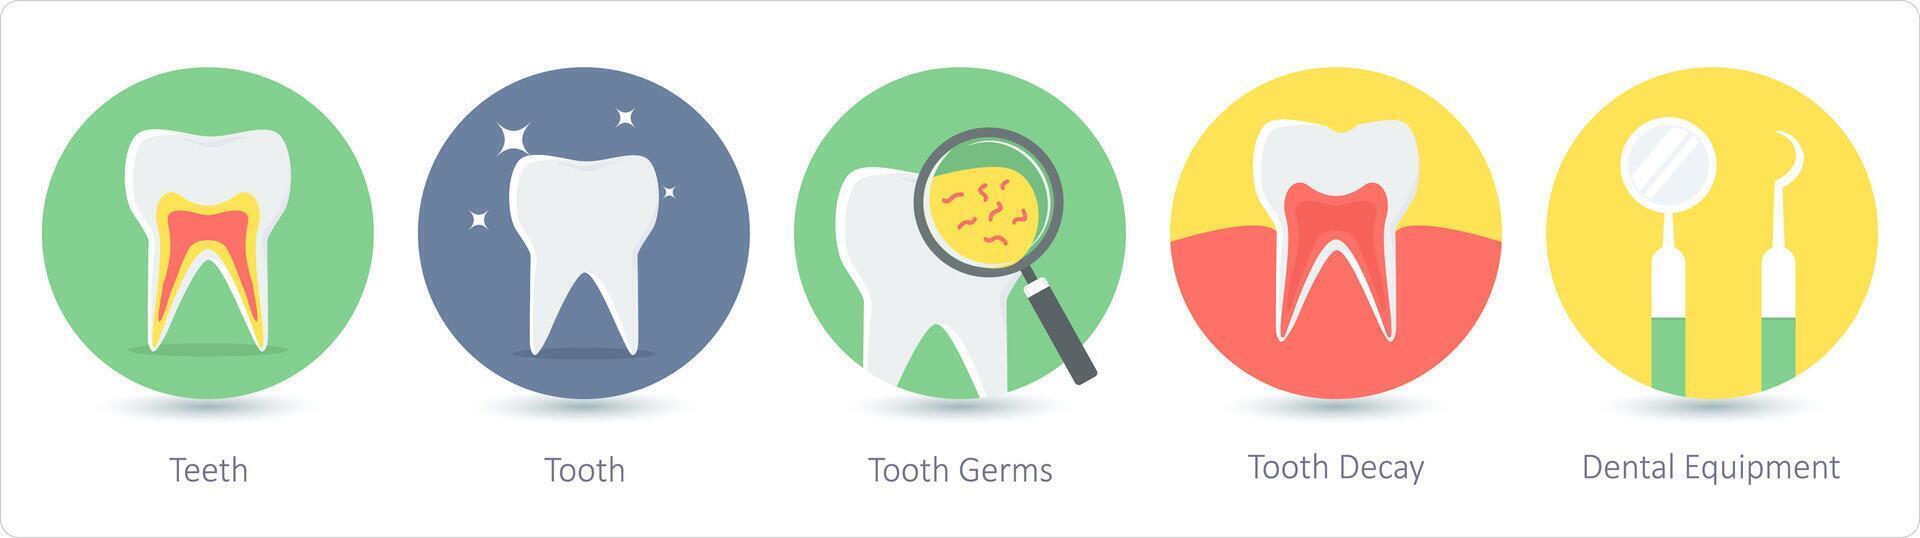 ein einstellen von 5 medizinisch Symbole wie Zähne, Zahn, Zahn Keime, Zahn zerfallen vektor